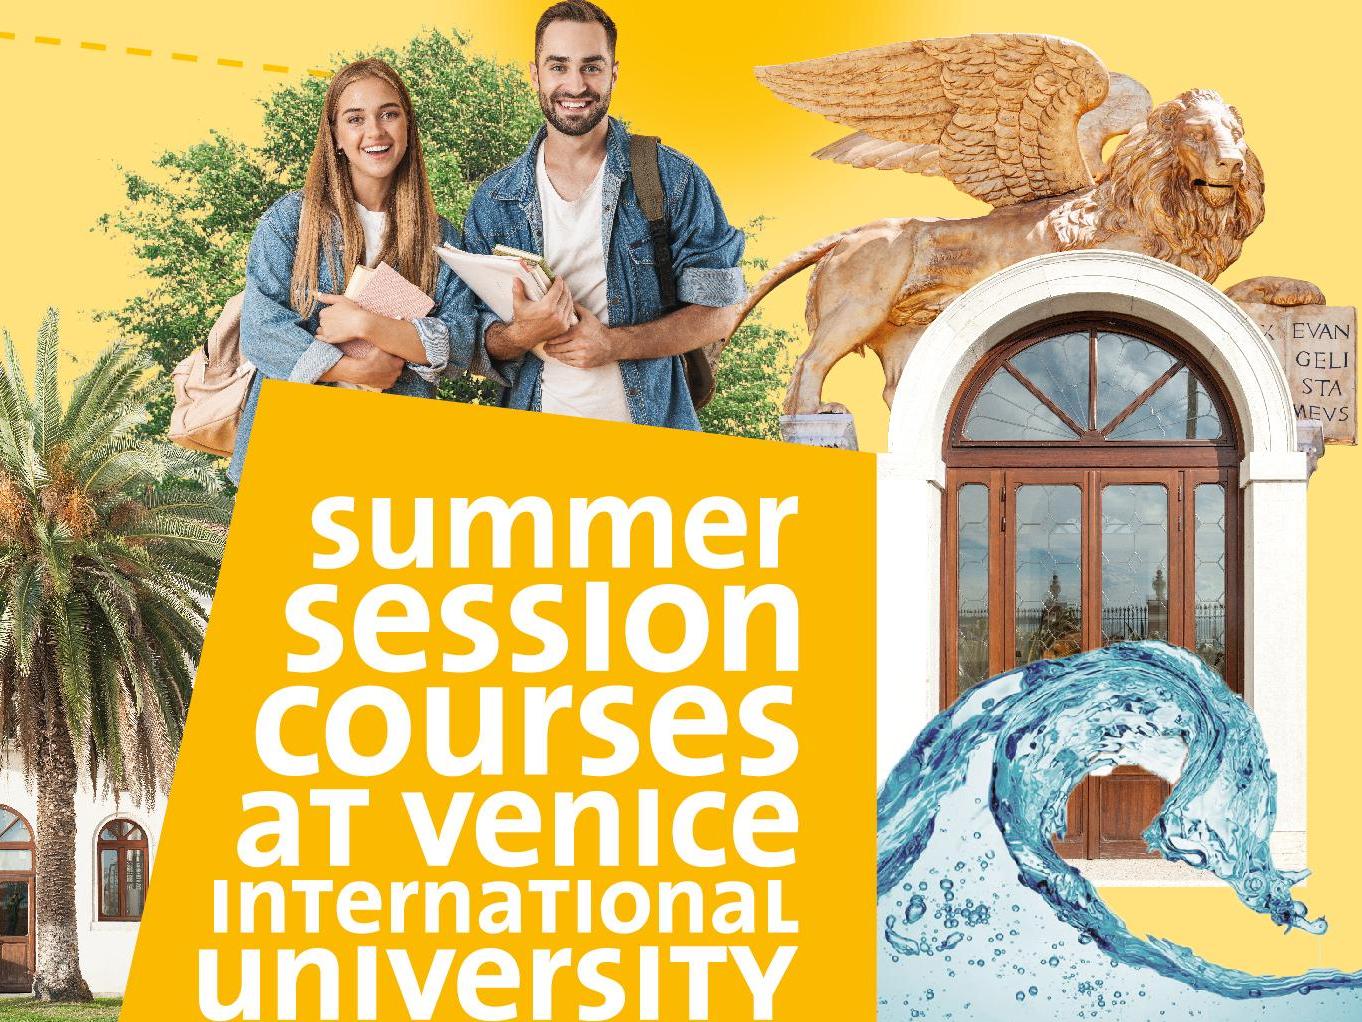 Bourses pour étudier à la Venice International University cet été